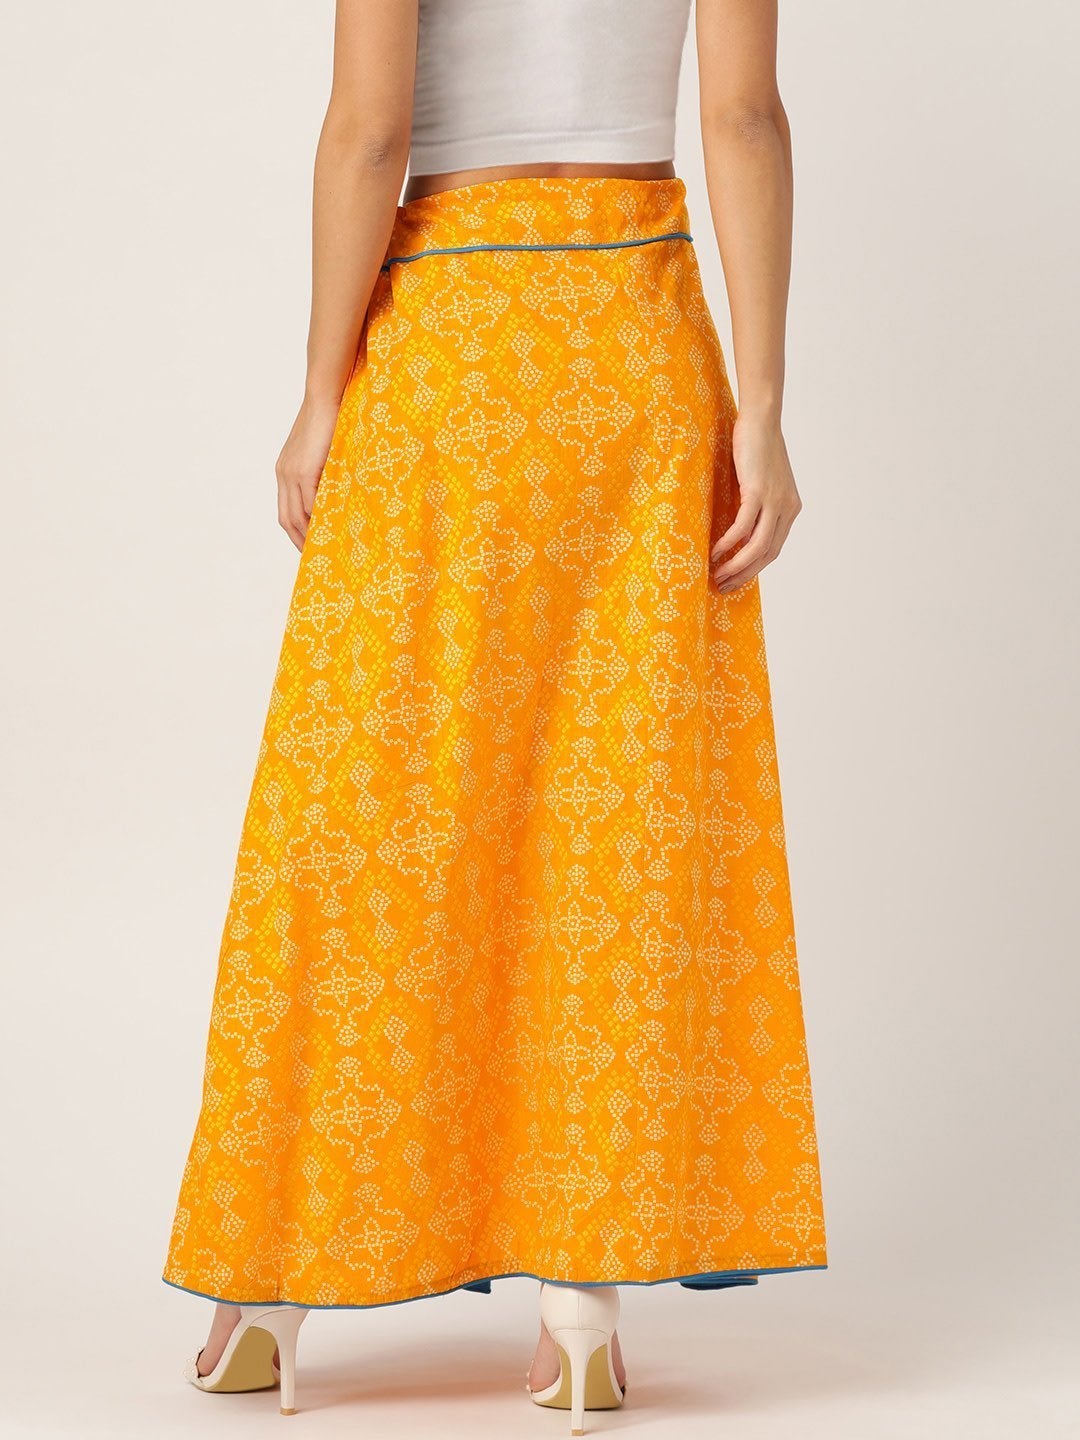 Women's Yellow Bandhini Skirt - InWeave